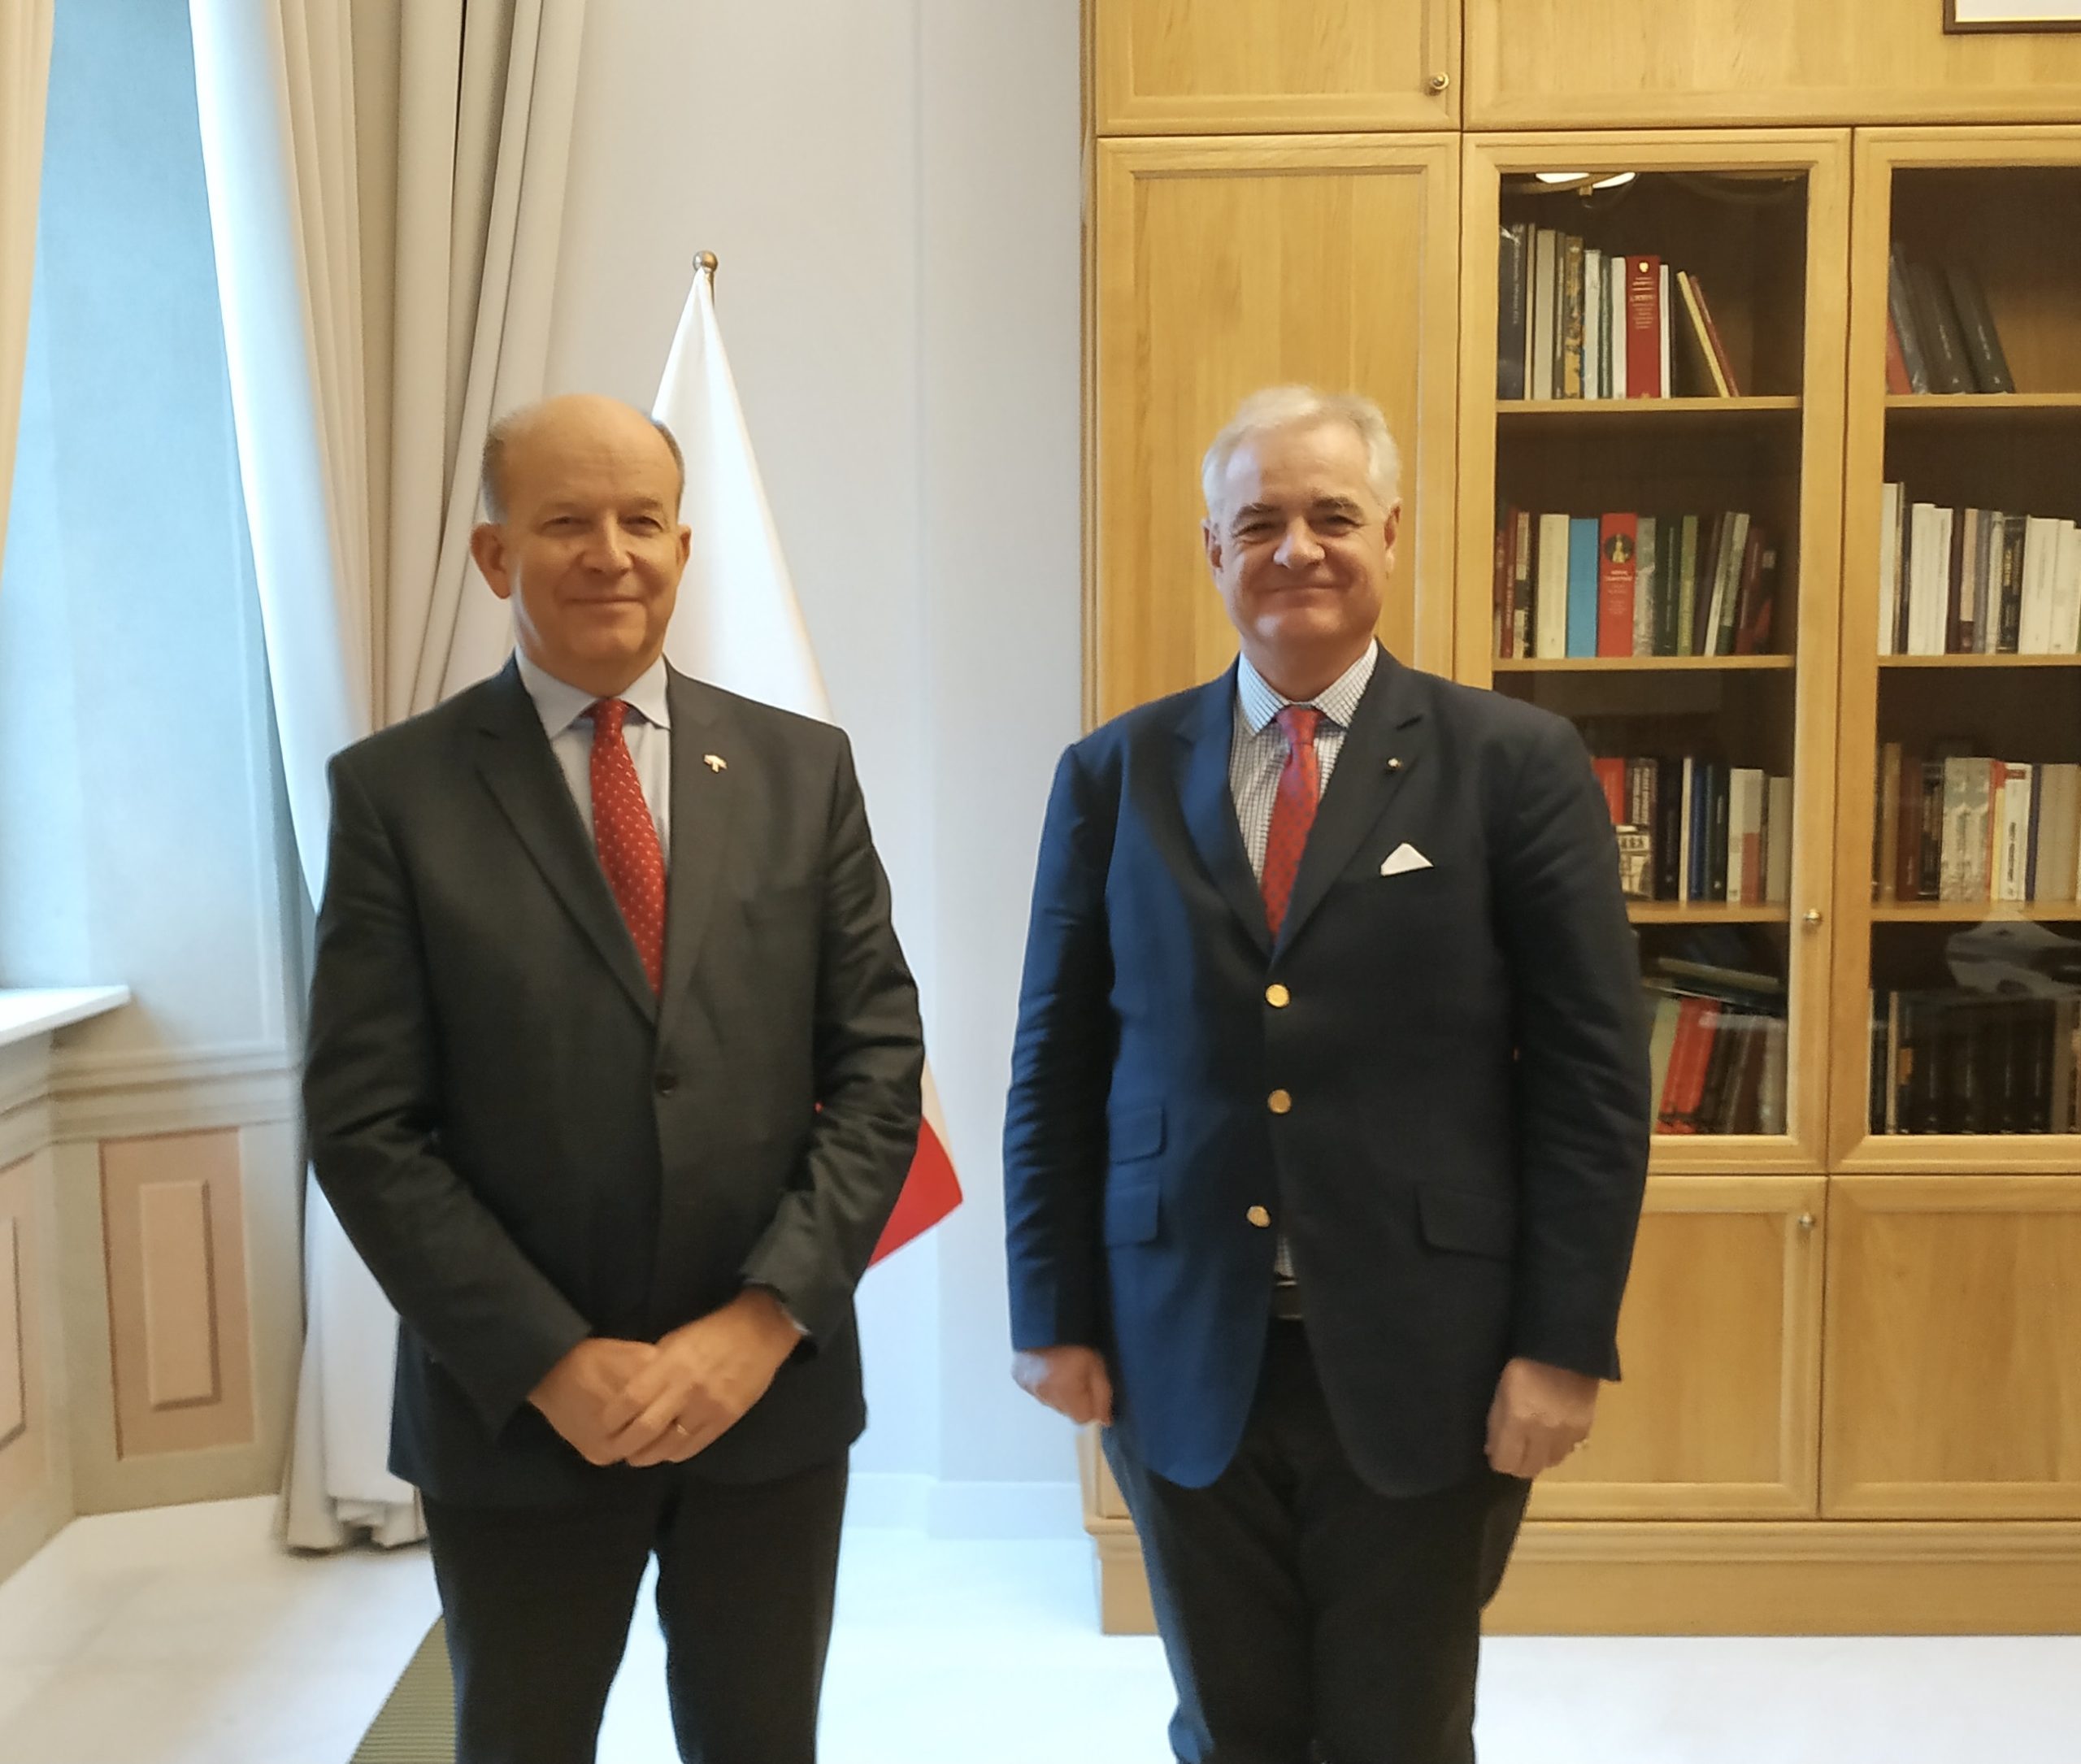 Ambasadorius susitiko su LR Seimo Pirmininke, Kauno Arkivyskupu Metropolitu, užsienio šalių Ambasadoriais